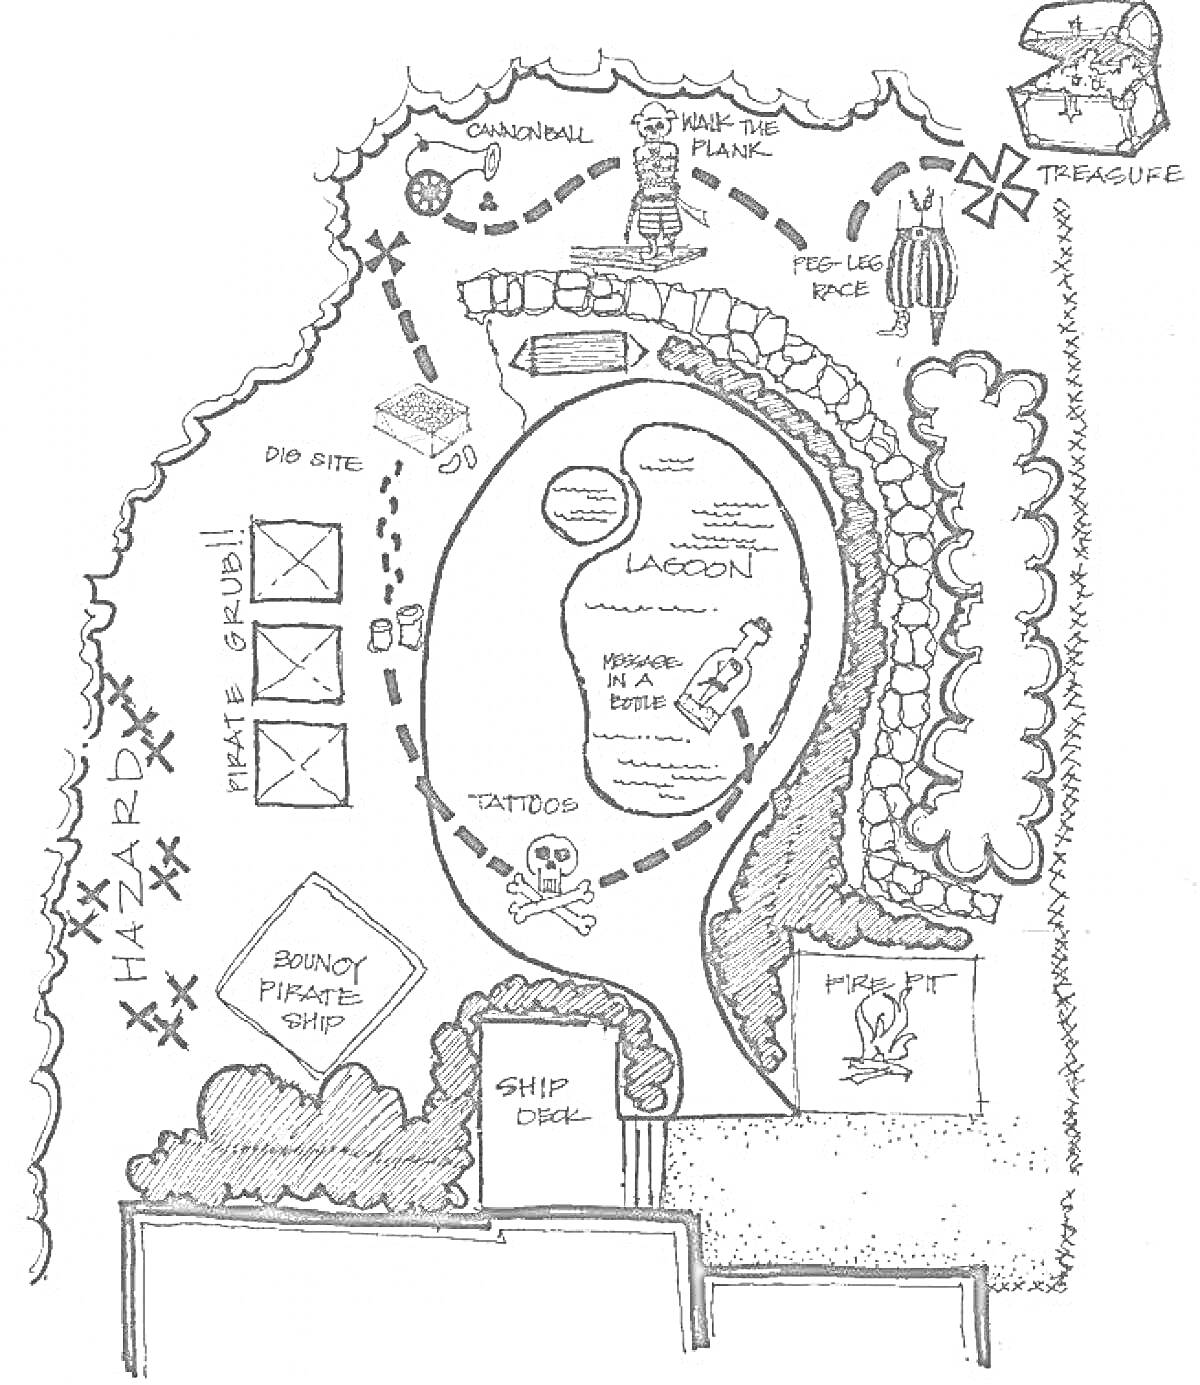 Раскраска Карта Сокровищ с лагуной, утонувшим кораблем, опасной зоной, каналом, скелетом и сундуком с сокровищами